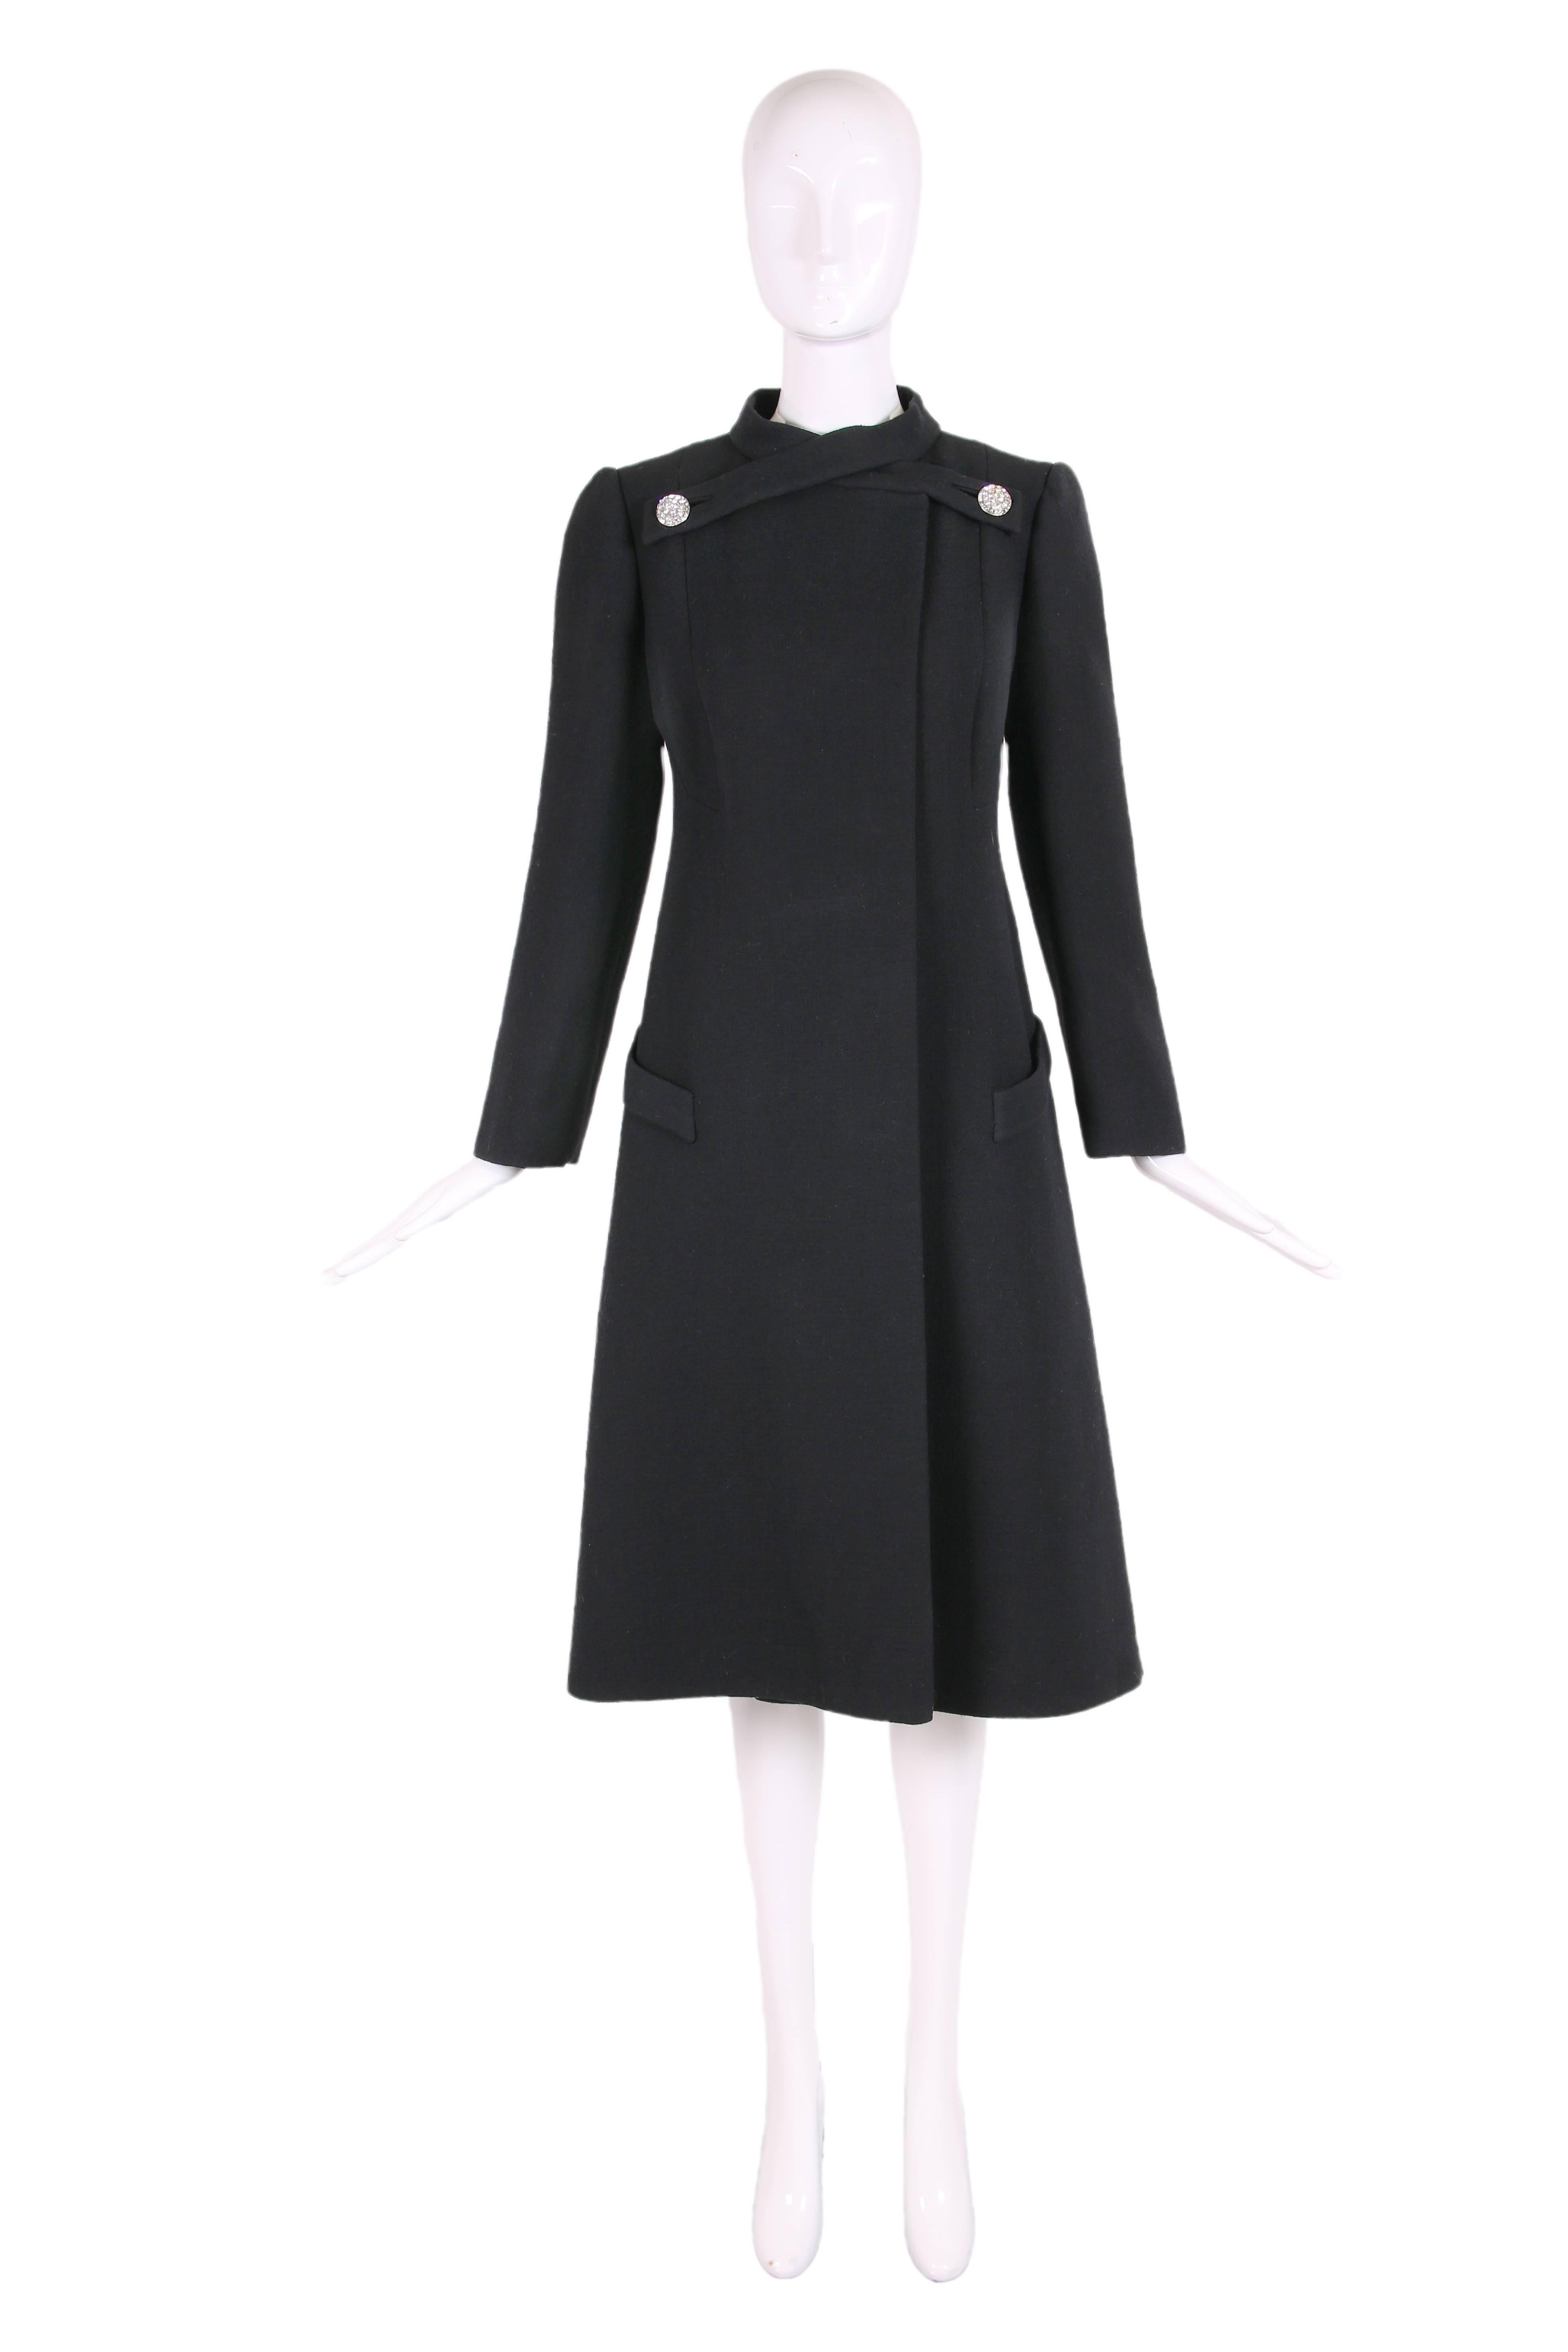 manteau en laine noire Pauline Trigere des années 1970 avec fermeture à boutons en strass croisés à l'encolure - entièrement doublé en soie. En excellent état - les boutons en strass à l'arrière ne sont pas d'origine. Pas d'étiquette de taille -